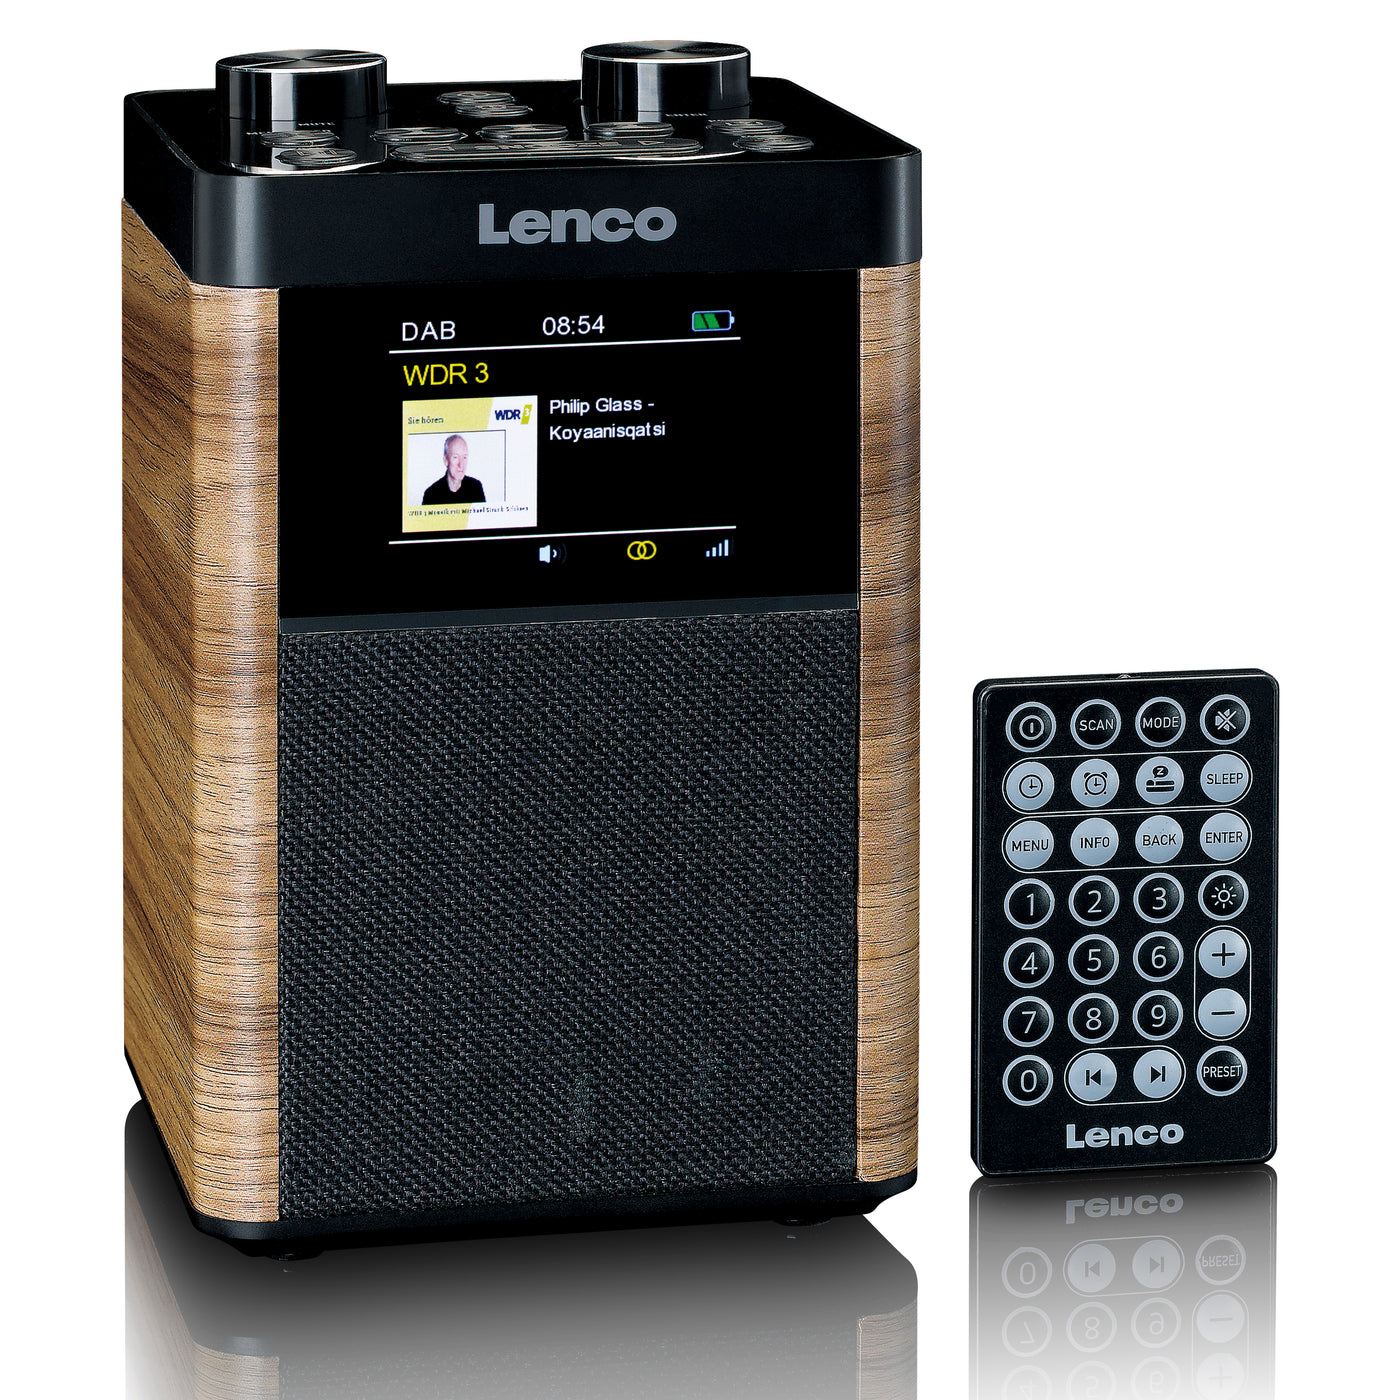 Lenco PDR-060WD - Radio portable DAB+/FM Bluetooth, haut-parleur 10W, batterie 14H - Noir